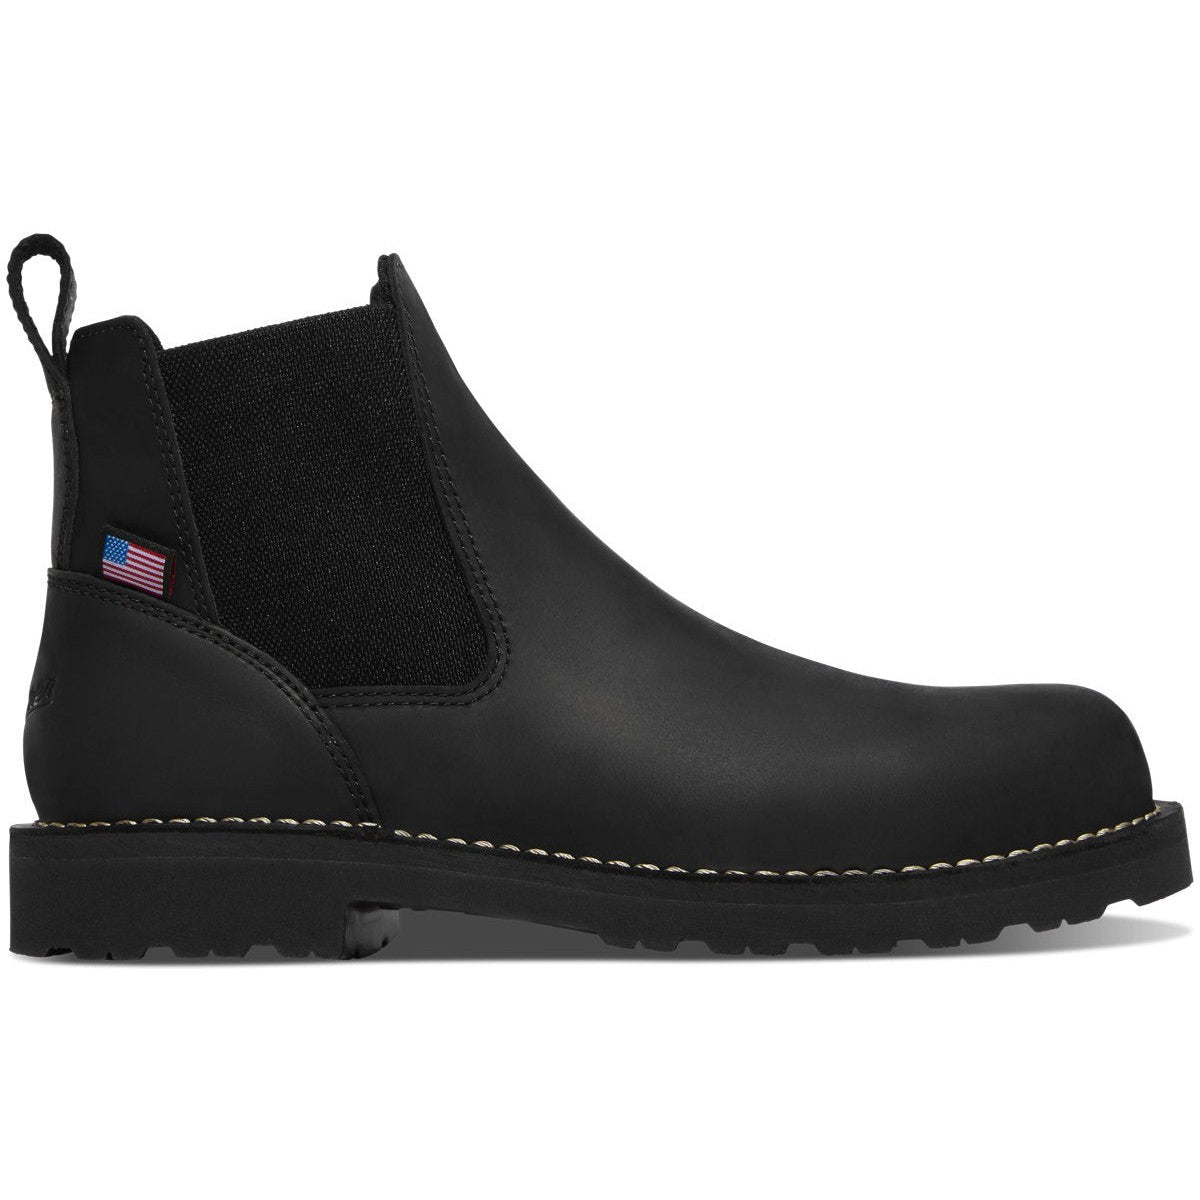 Danner Men's Bull Run 6" Plain Toe Chelsea Work Boot -Black- 15483 7 / Medium / Black - Overlook Boots